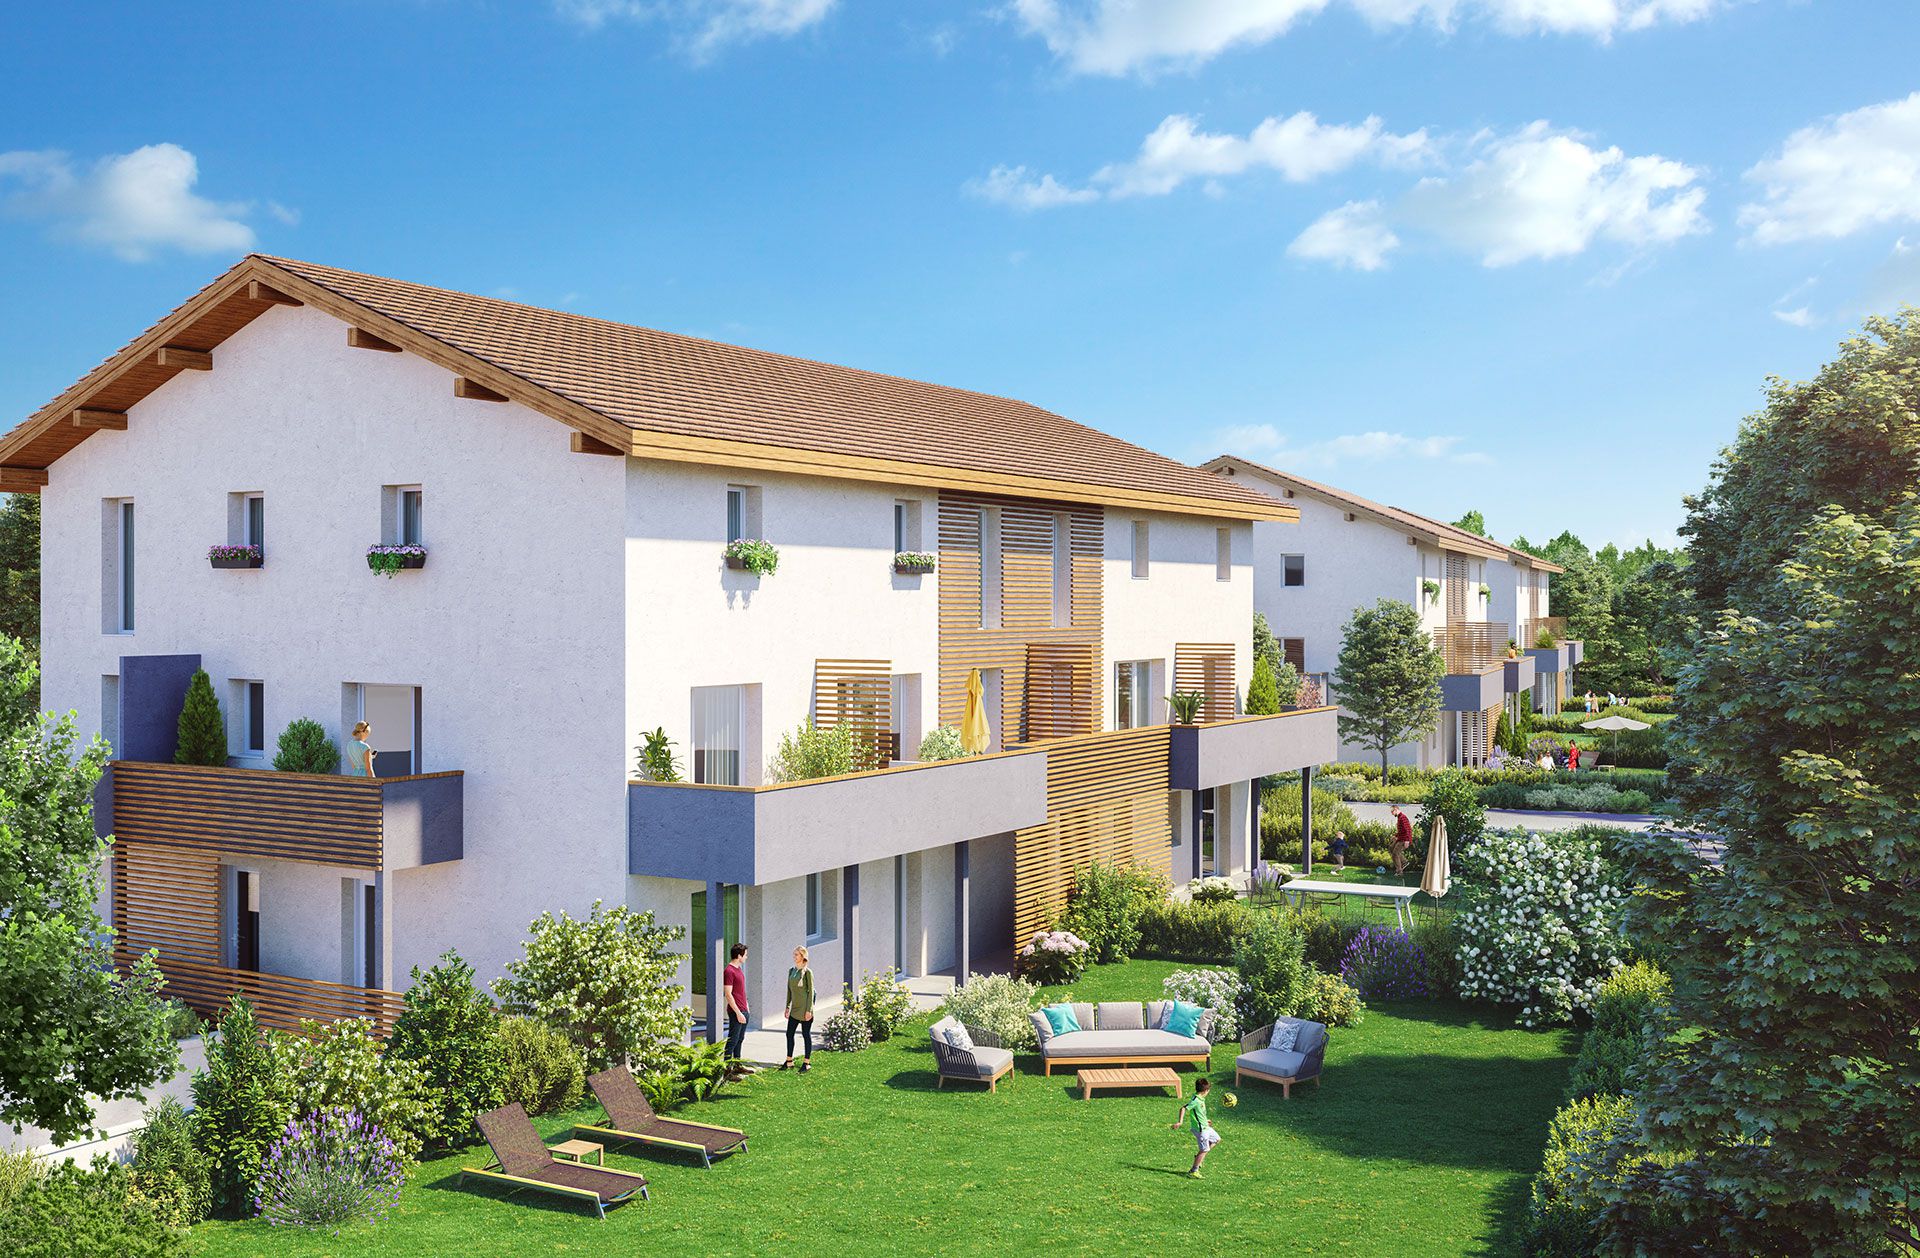 Programme immobilier EUR17 appartement à Anthy-Sur-Leman (74200) Situé dans un terrain confidentiel